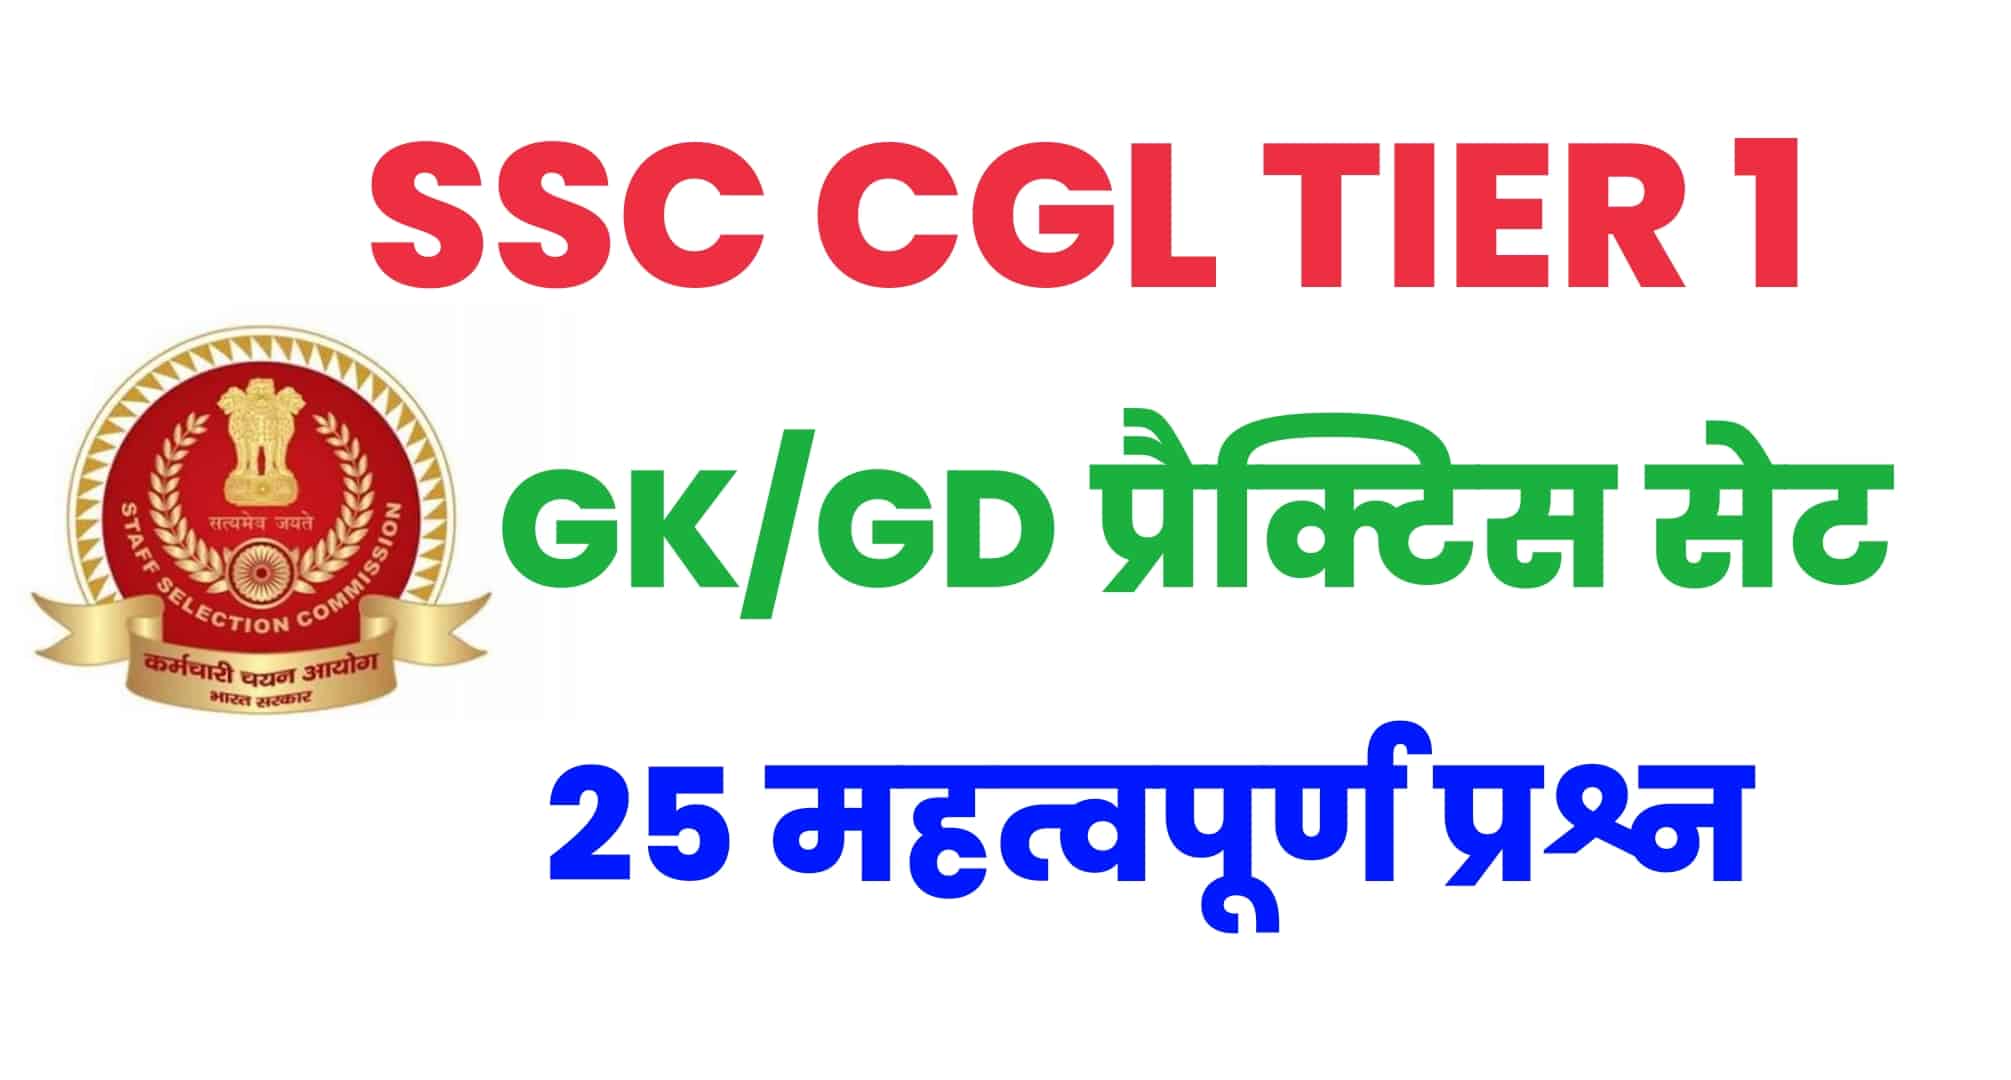 SSC CGL GK/GS प्रैक्टिस सेट 1 : परीक्षा से पहले कर लें सामान्य ज्ञान के इन महत्वपूर्ण 25 प्रश्नों का अध्ययन